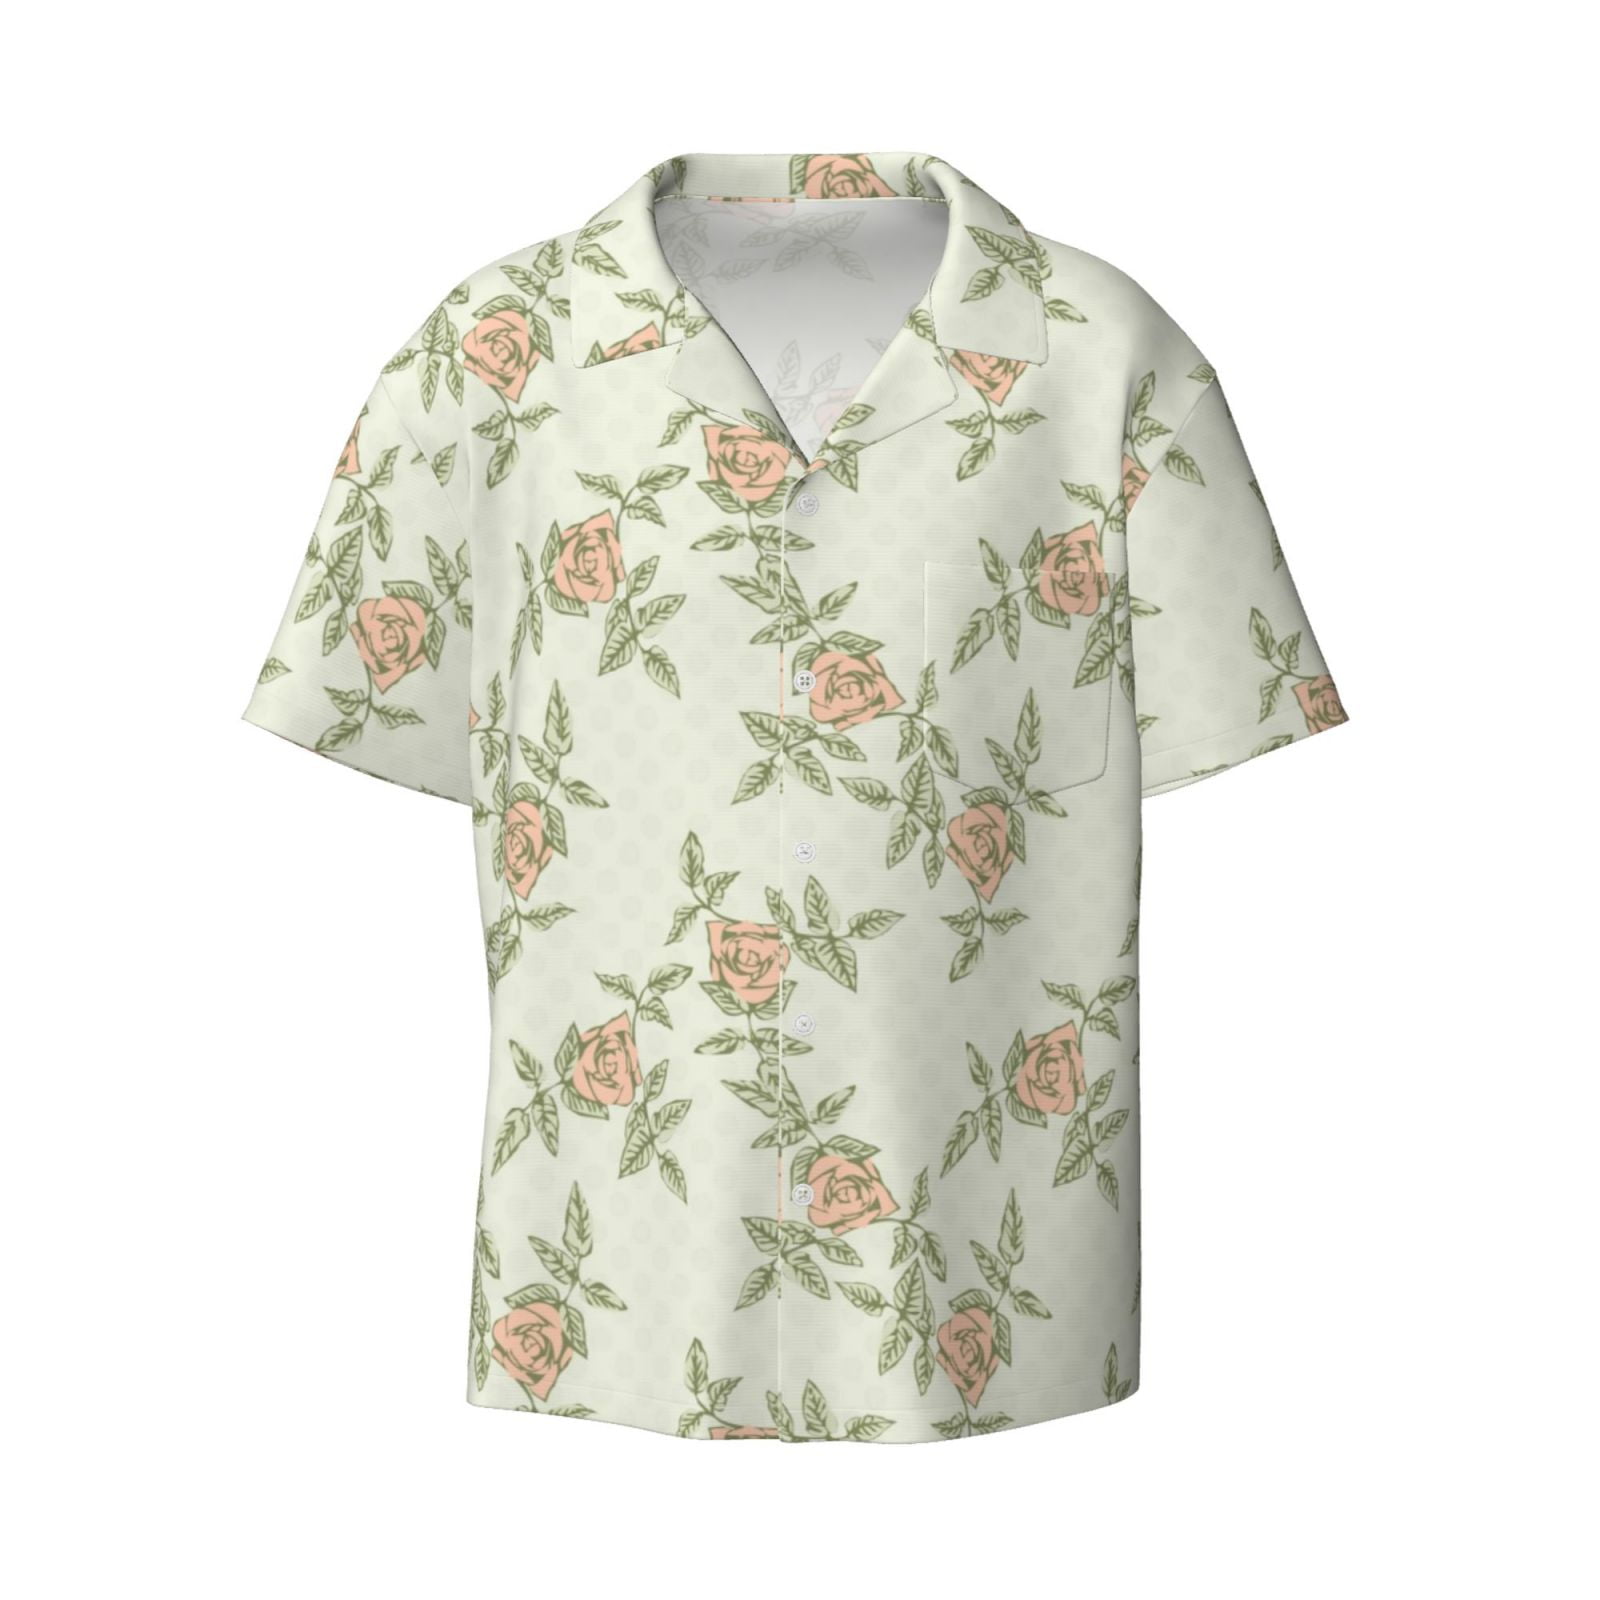 Balery Rose Men's Casual Button Down Shirt Short Sleeve Textured Summer ...